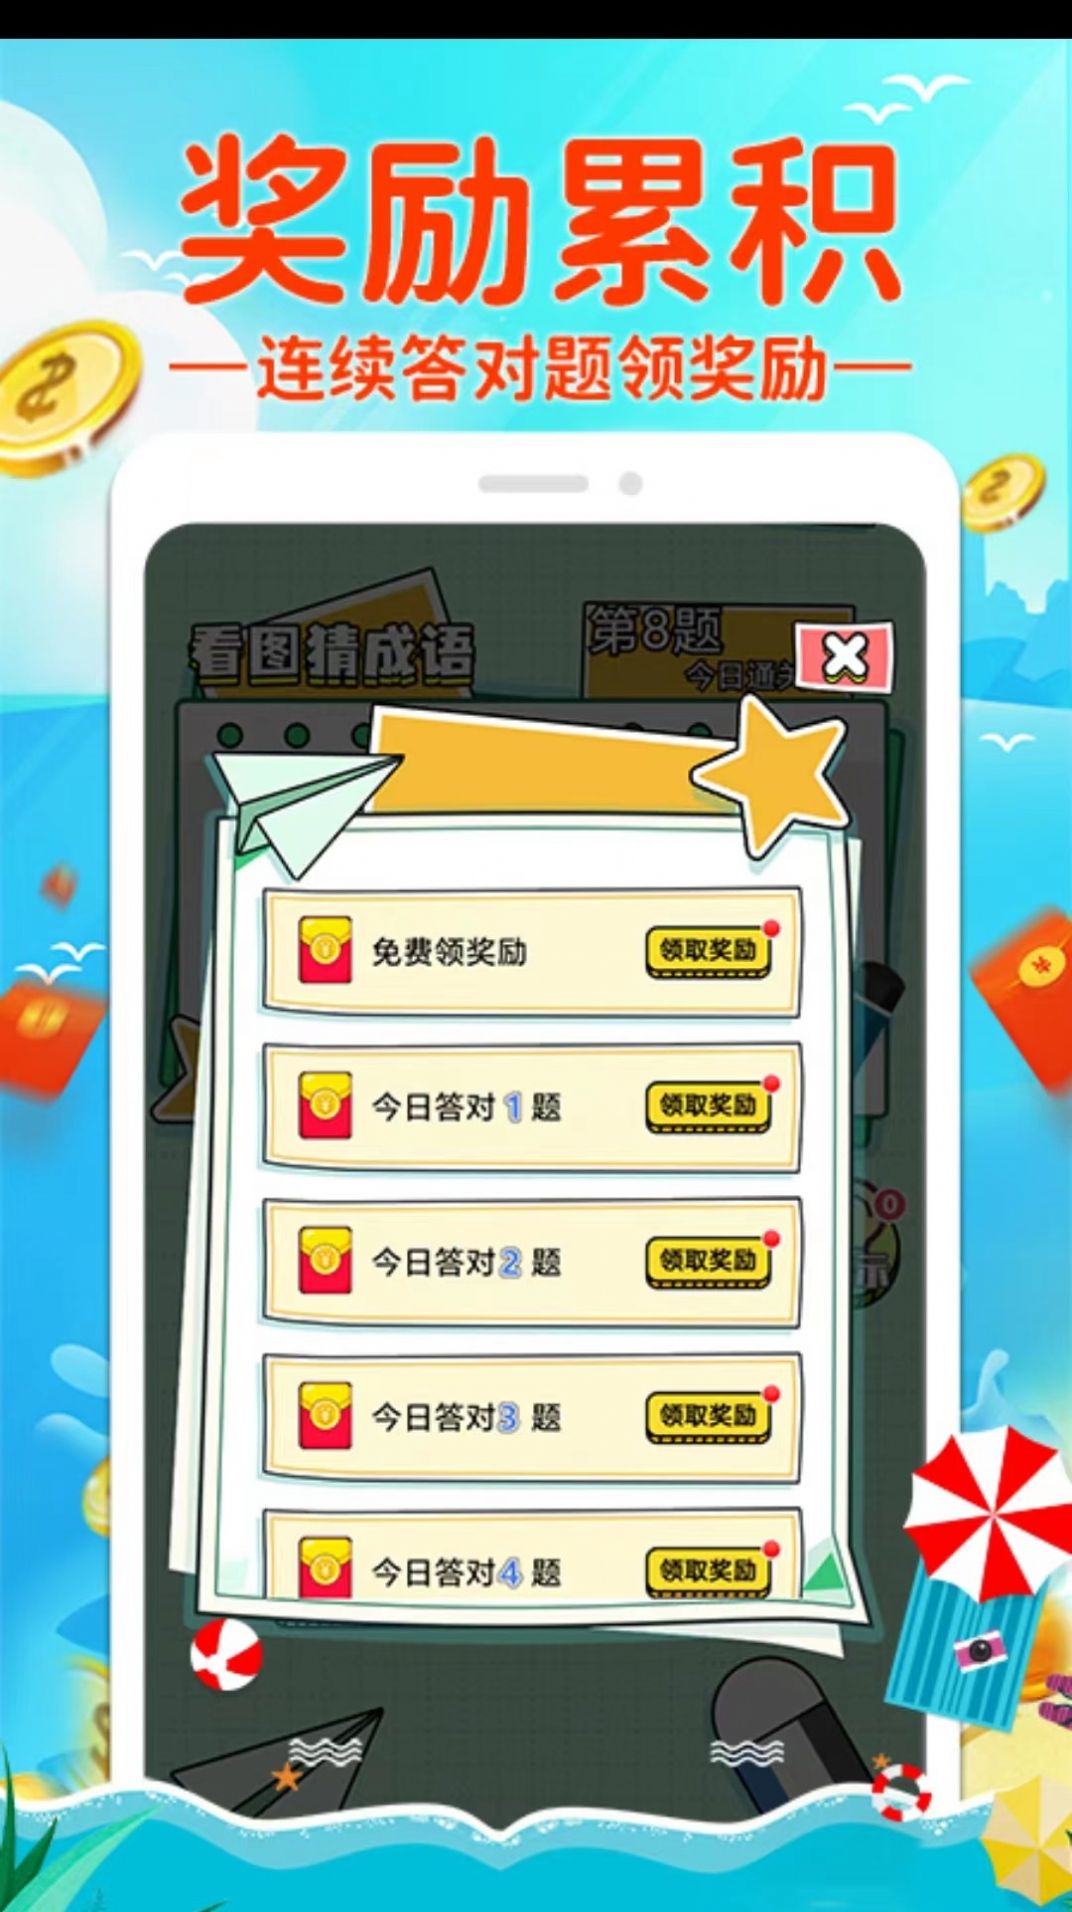 答成语领红包游戏下载app图3: